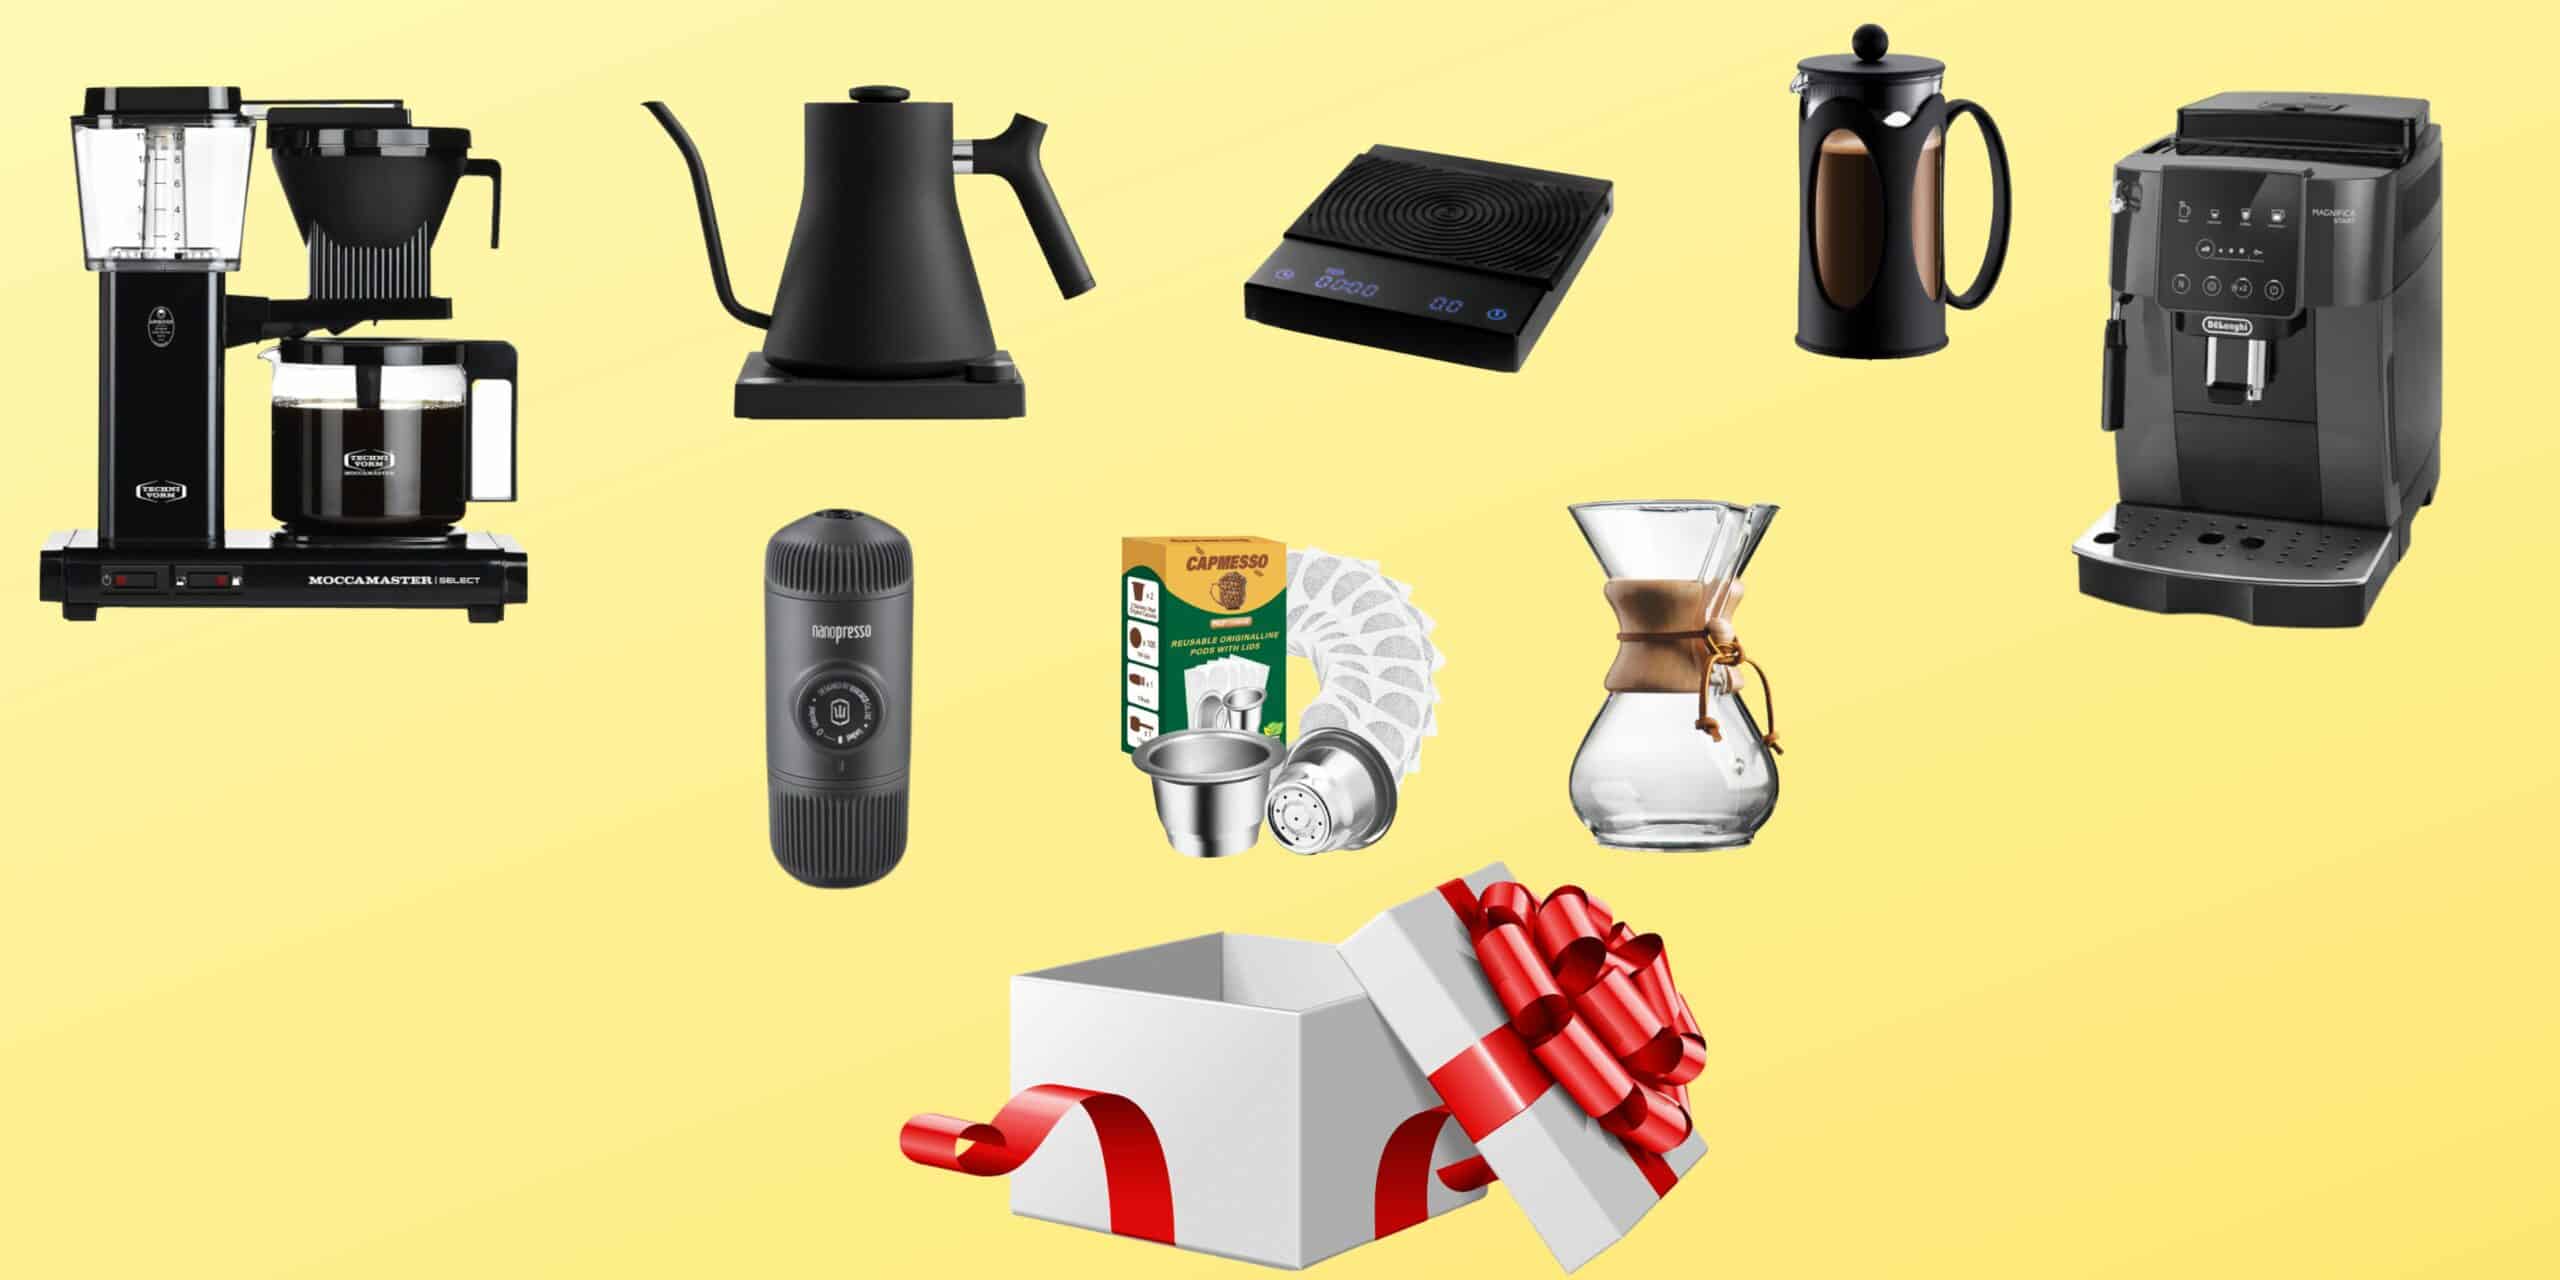 Les 21 meilleures idées cadeaux pour les amateurs de café